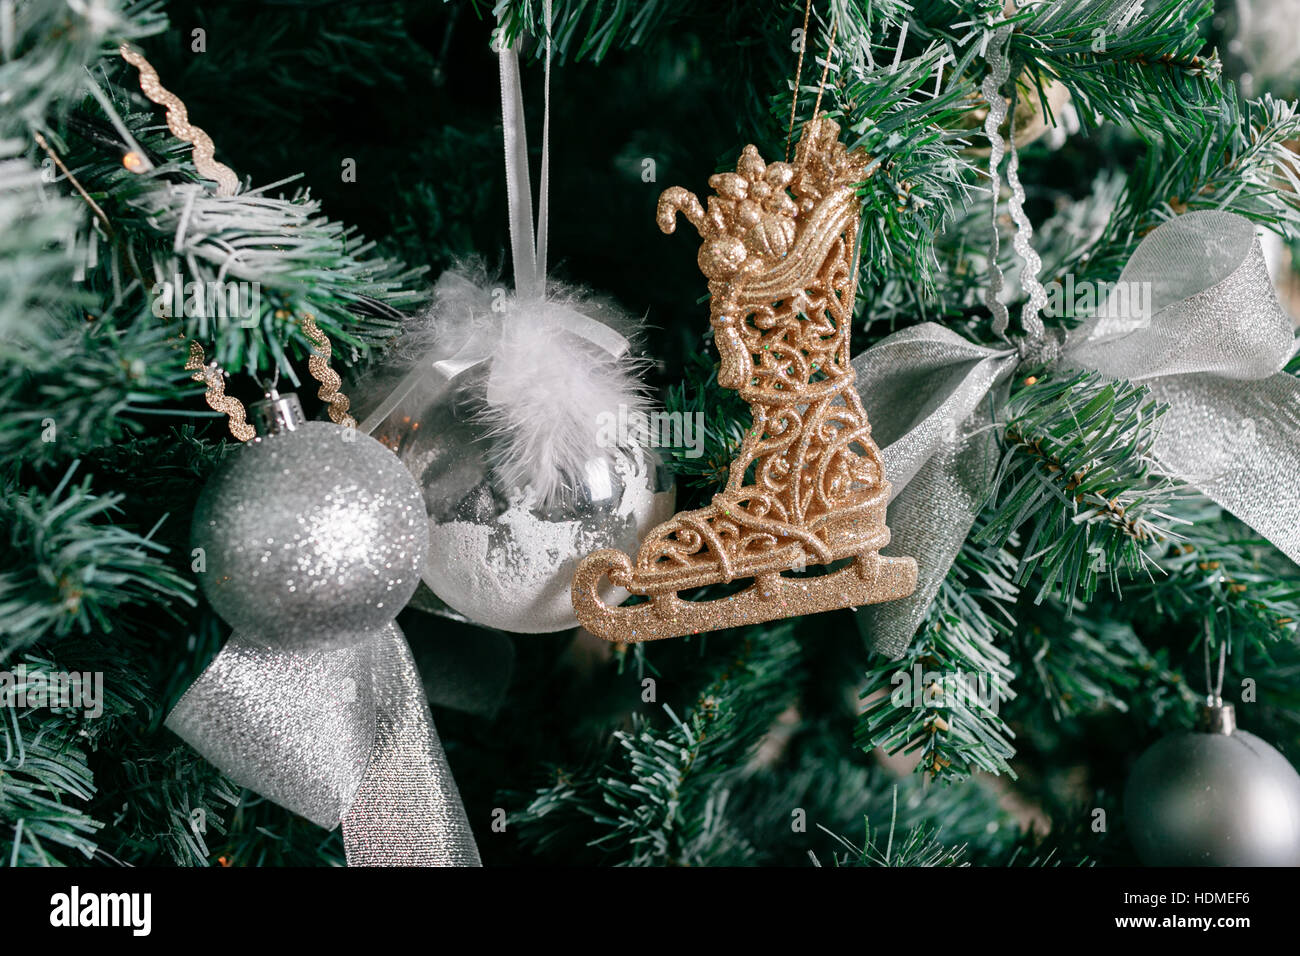 Albero Di Natale Con Pigne E Neve.Close Up Di Albero Di Natale Con Ornamenti Baubles Prua I Fiocchi Di Neve Pigne E Luci Foto Stock Alamy